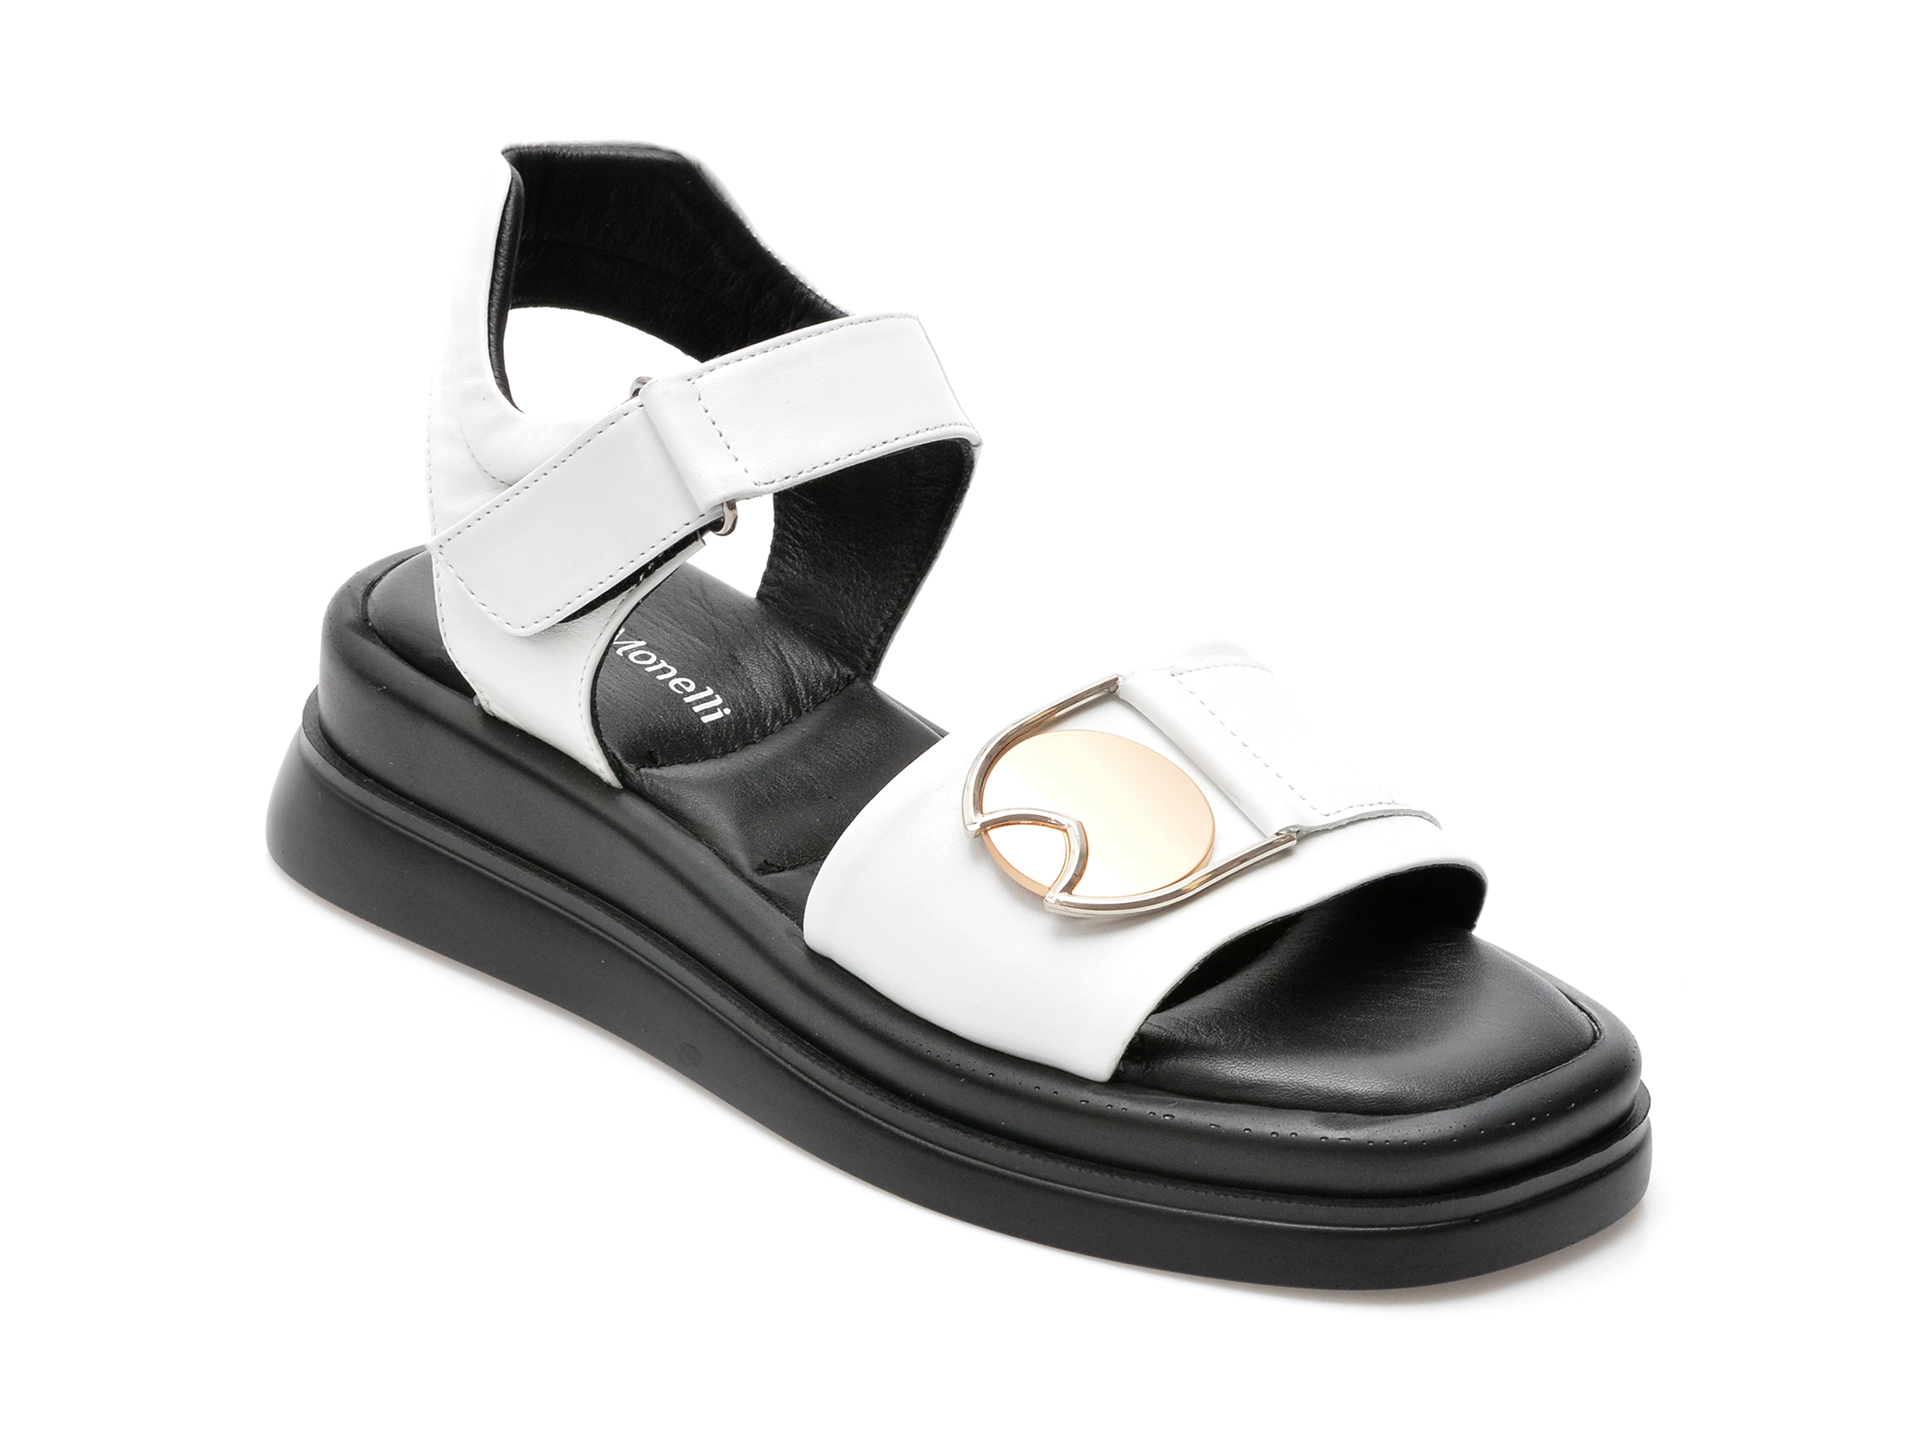 Sandale FABIO MONELLI albe, 671, din piele naturala /femei/sandale